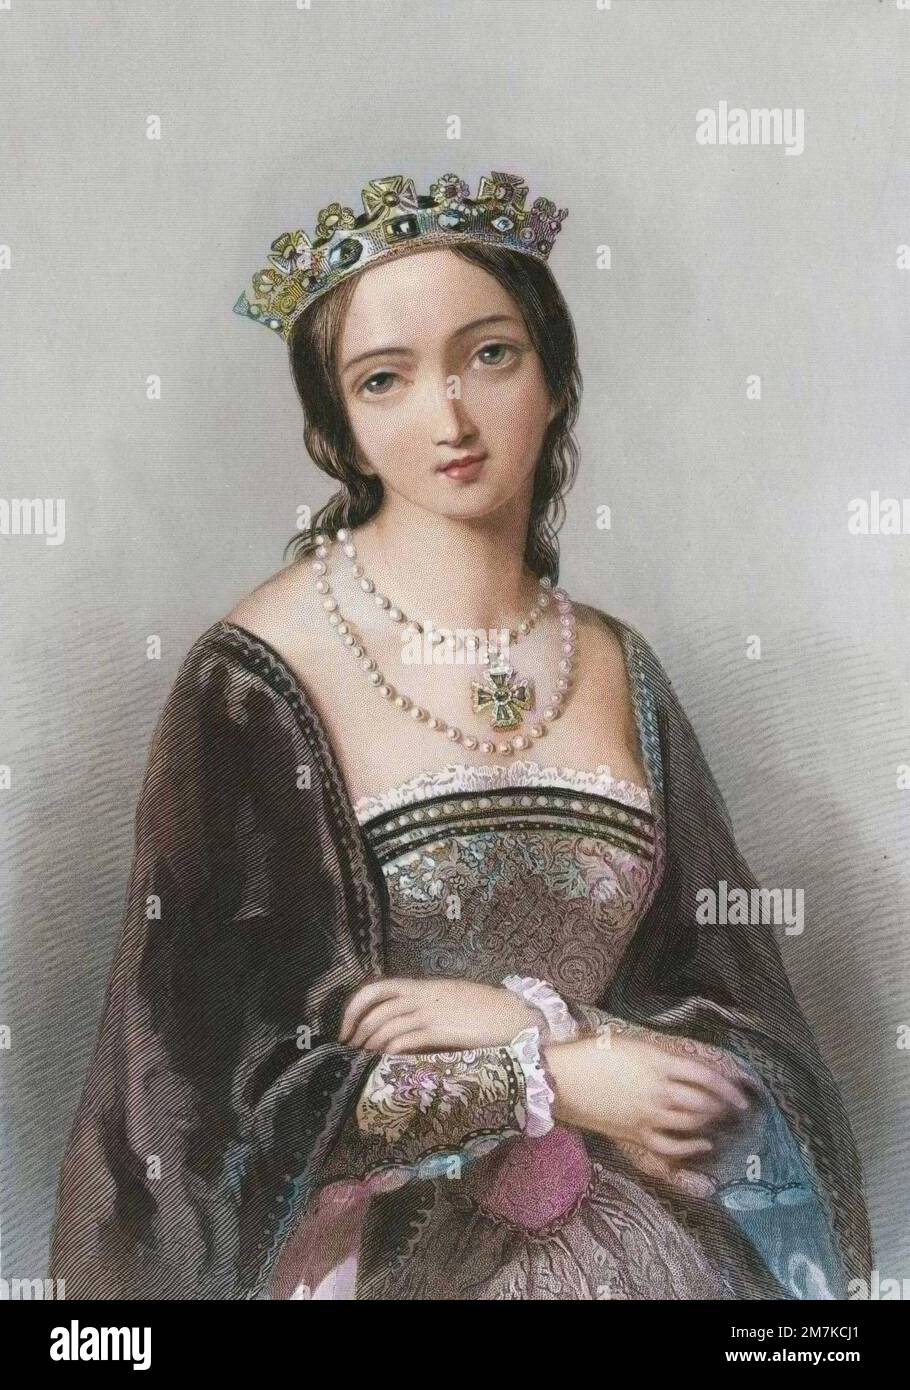 Mary Tudor (1516-1558) said Bloody Mary, queen of England in 1553-1558 - Portrait de Mary Tudor (1516-1558), fille d'Henri VIII et de Catherine d'Aragon, demi soeur d'Elisabeth I - Elle devint Reine d'Angleterre en 1553 et reste connue sous le nom de 'Bloody Mary' pour la persecussion des protestants. Stock Photo